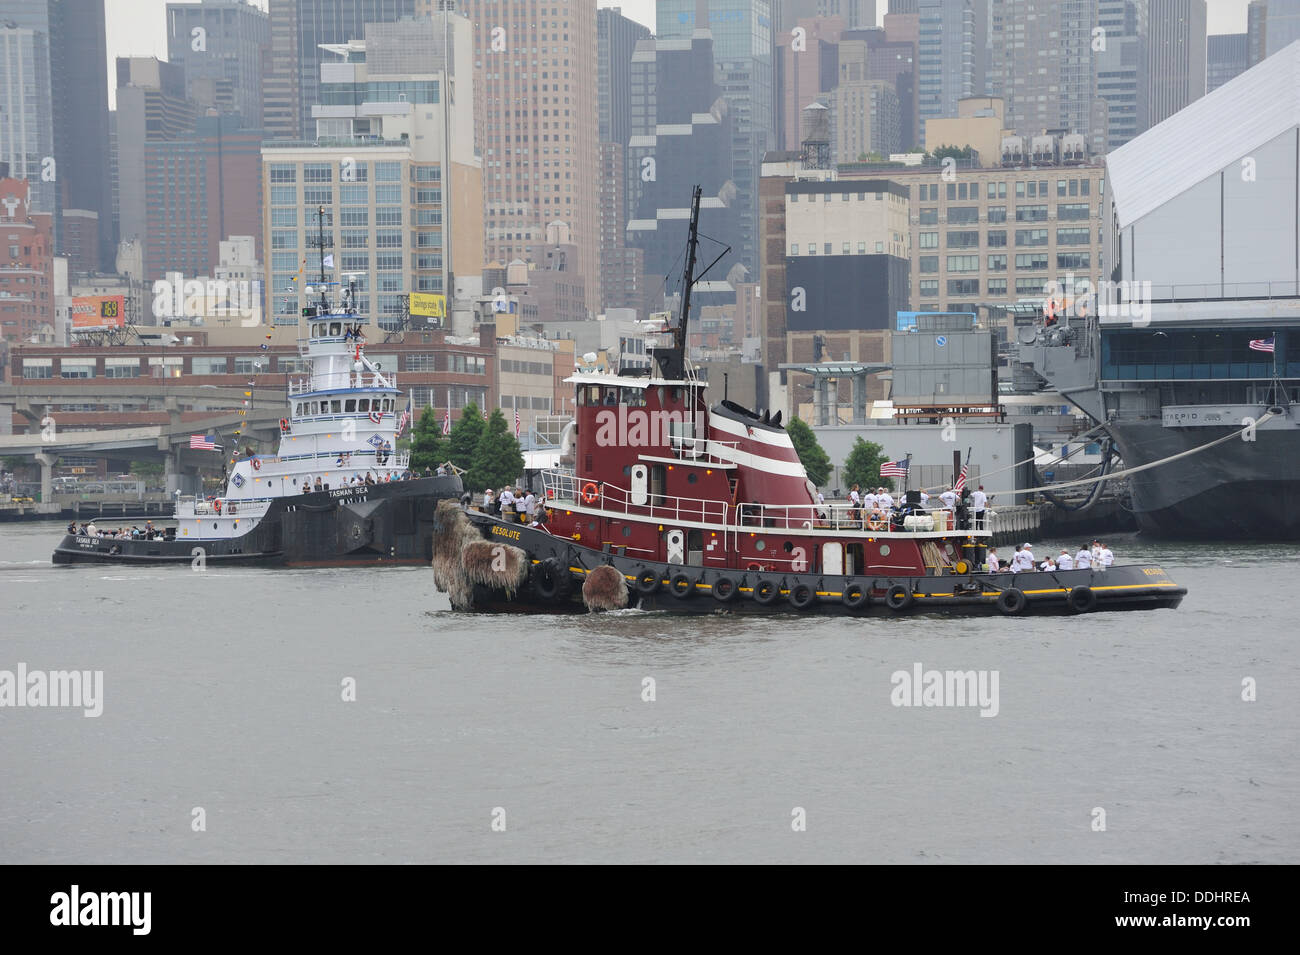 Les remorqueurs Resolute et mer de Tasmanie sur la rivière Hudson à Manhattan dans l'arrière-plan. Banque D'Images